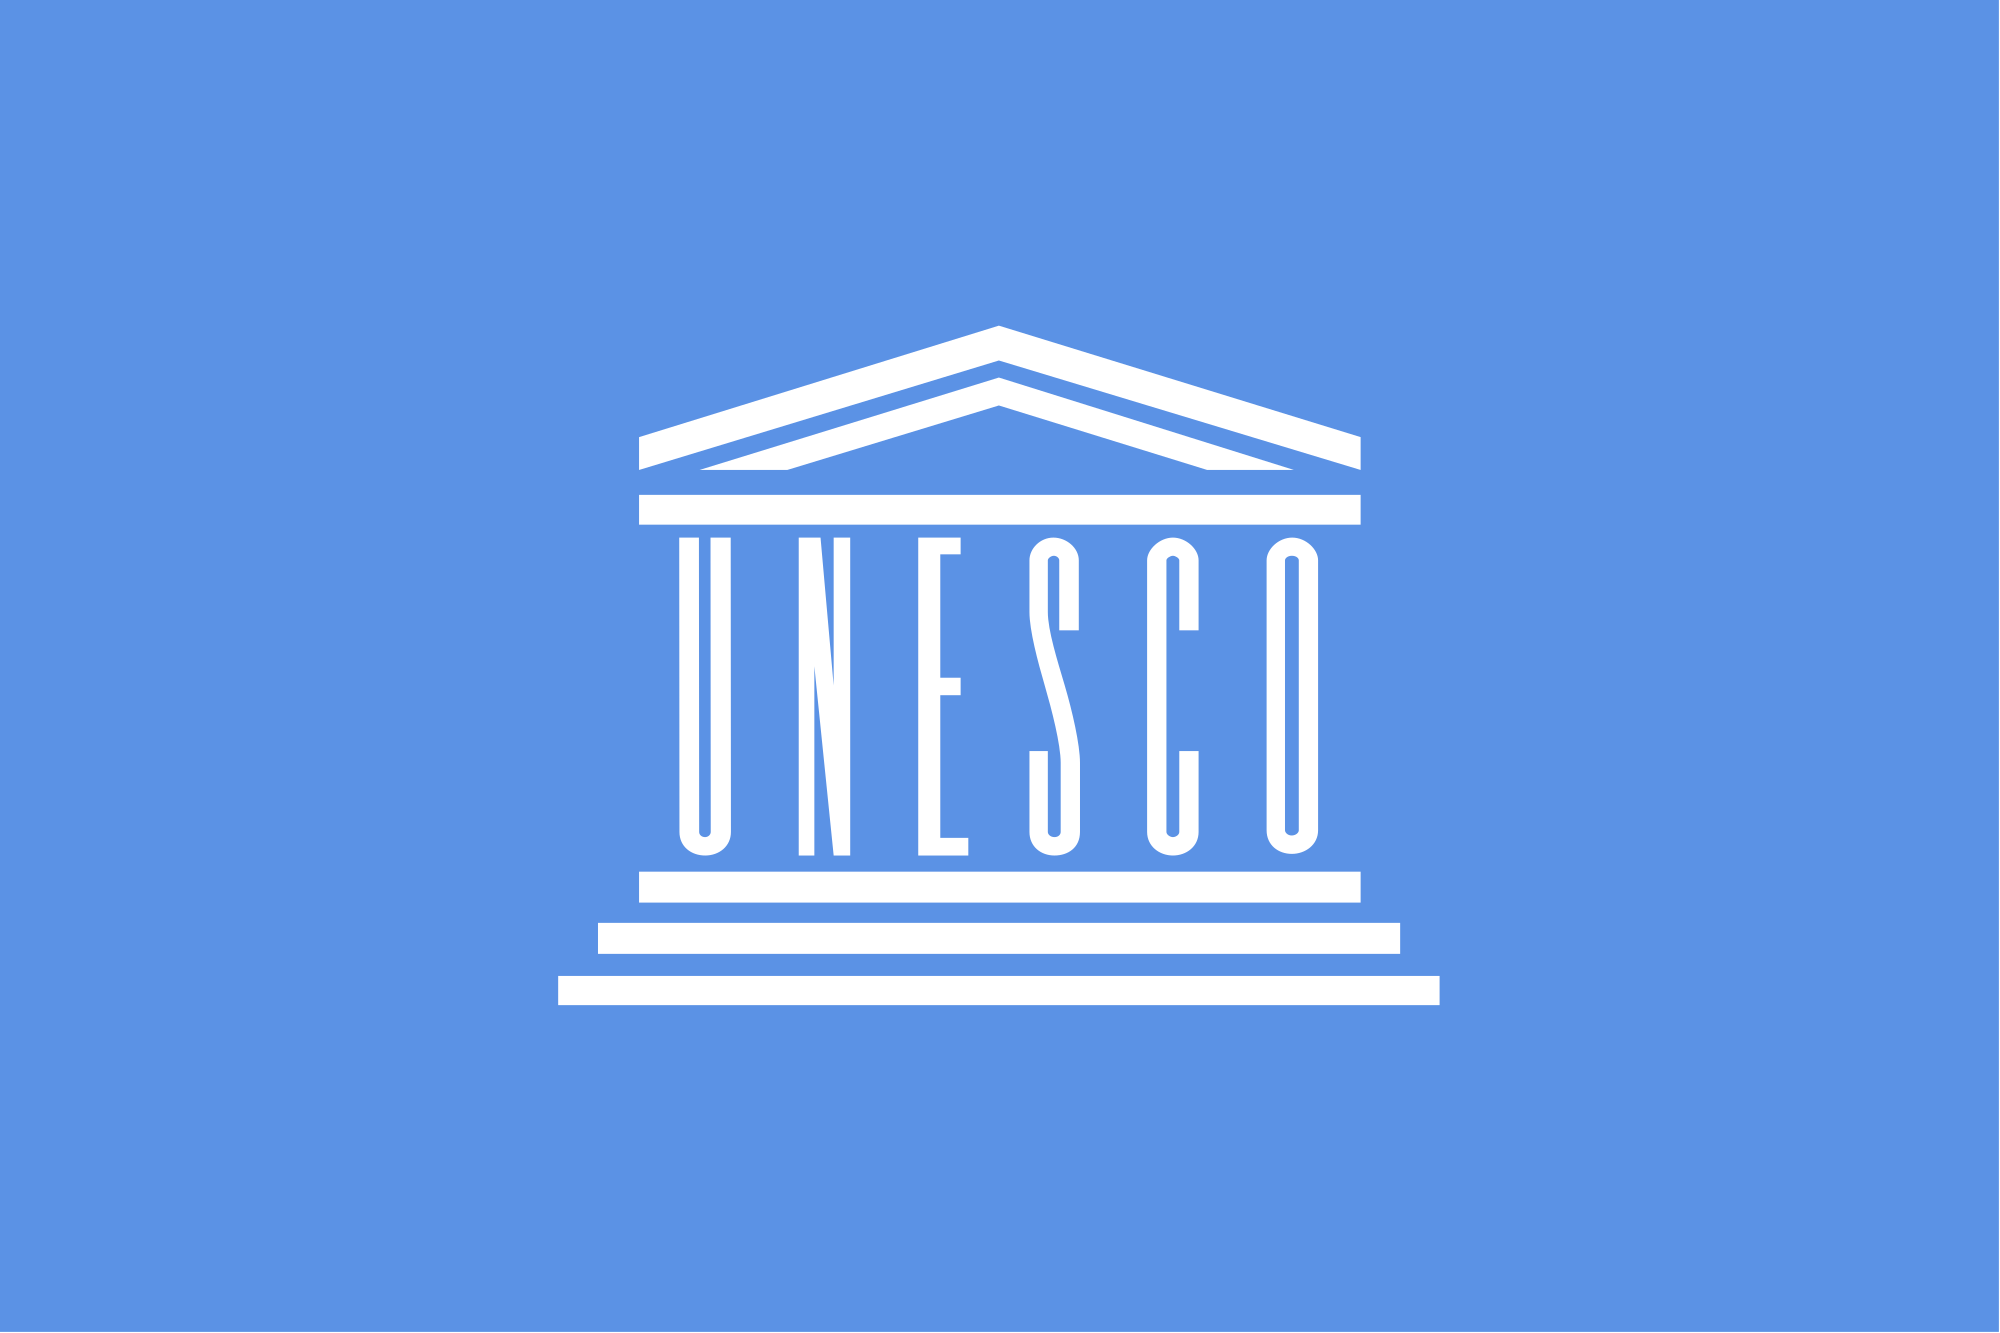 Ermenistan, UNESCO'da önemli görev üstlendi